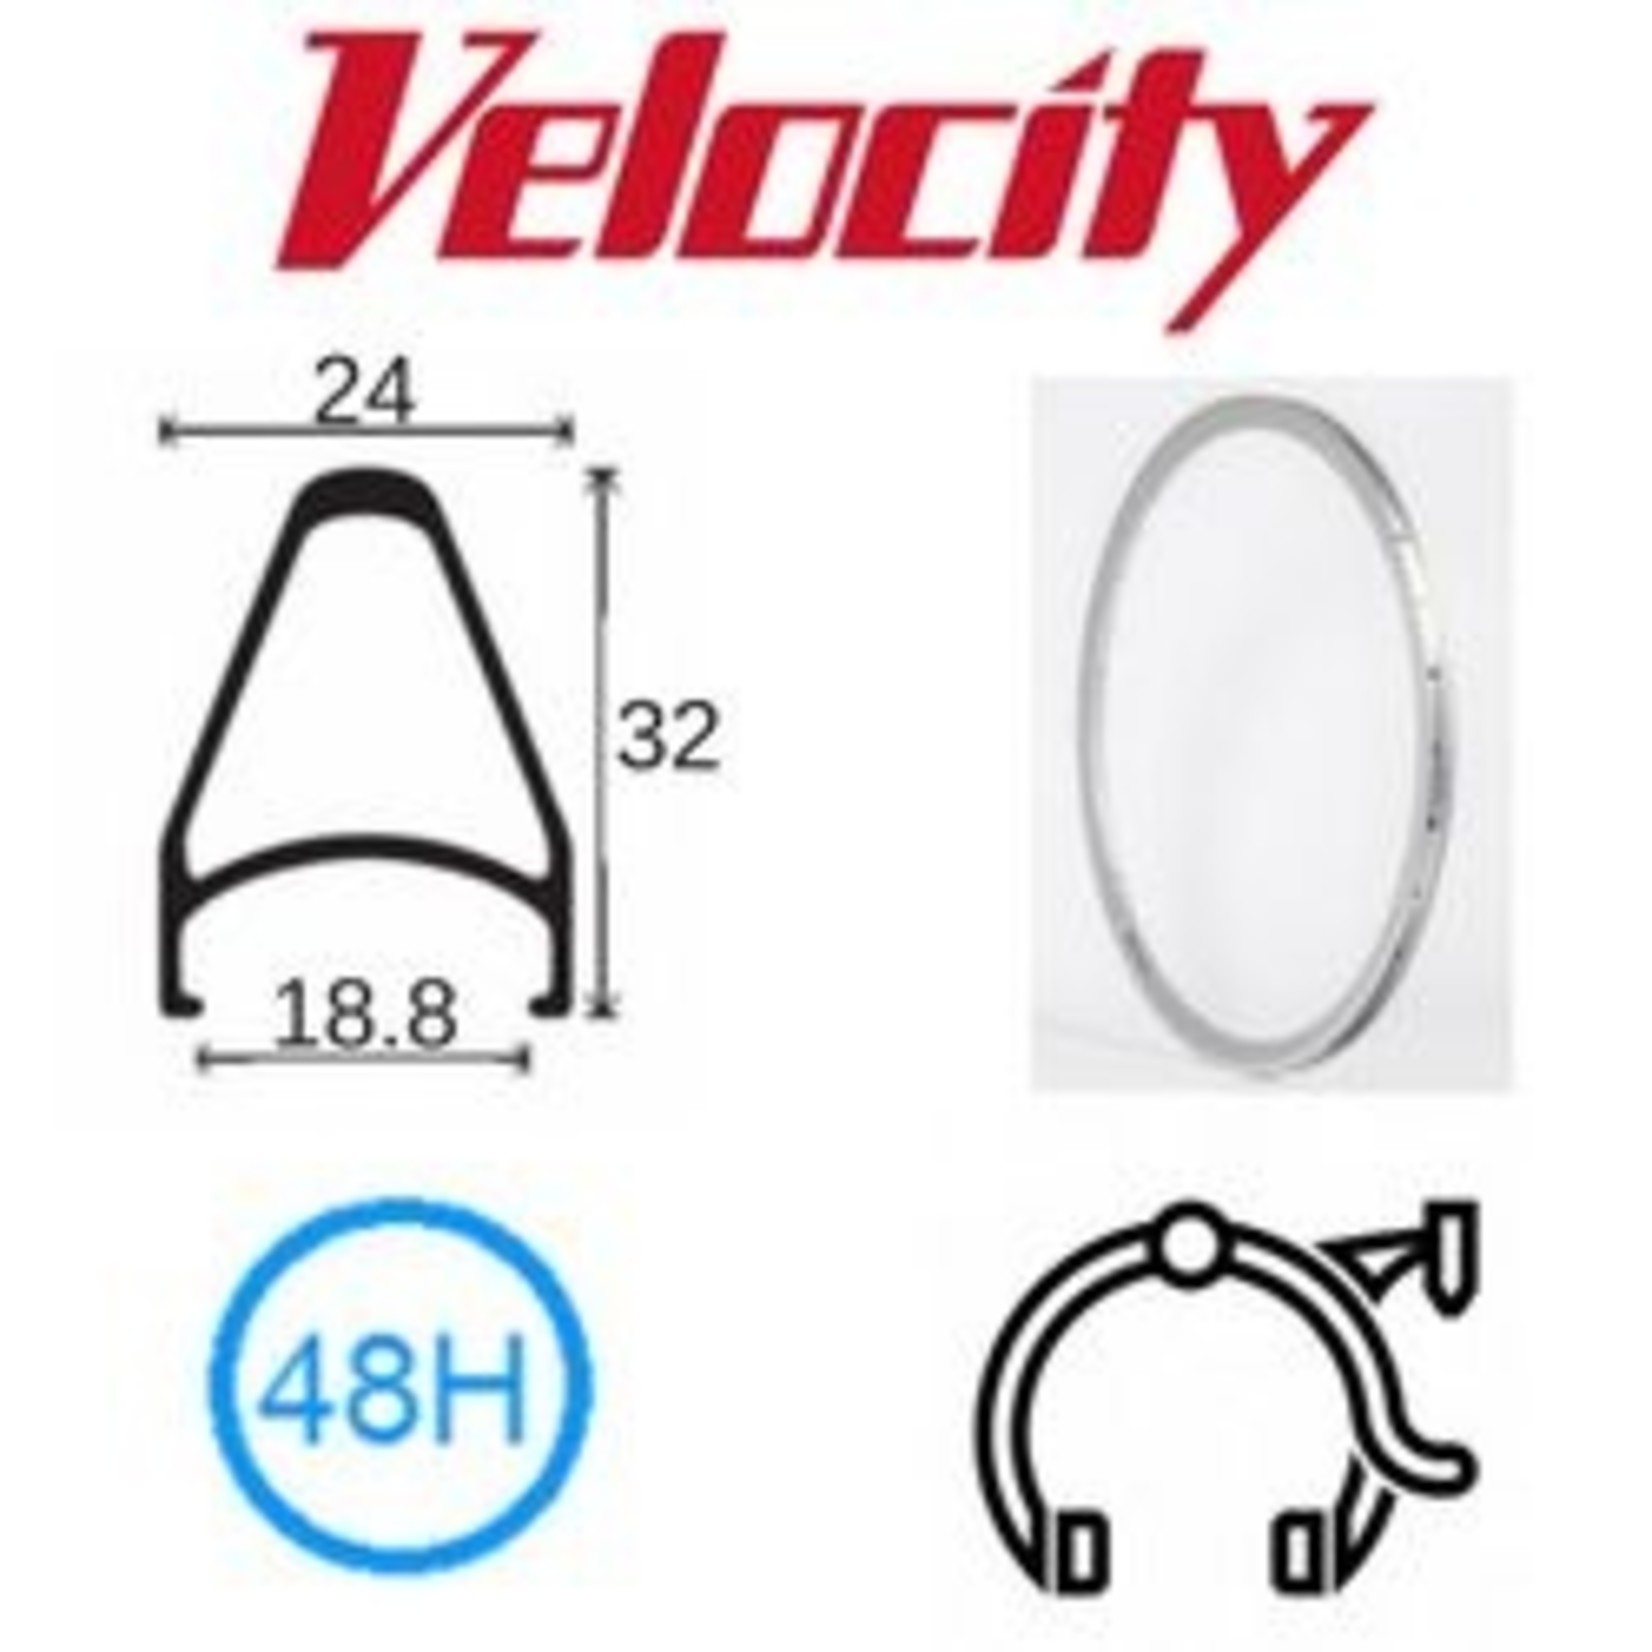 velocity Velocity Rim - Chukker 26" (559) 48H - Presta Valve - Rim Brake - D/W - Silver